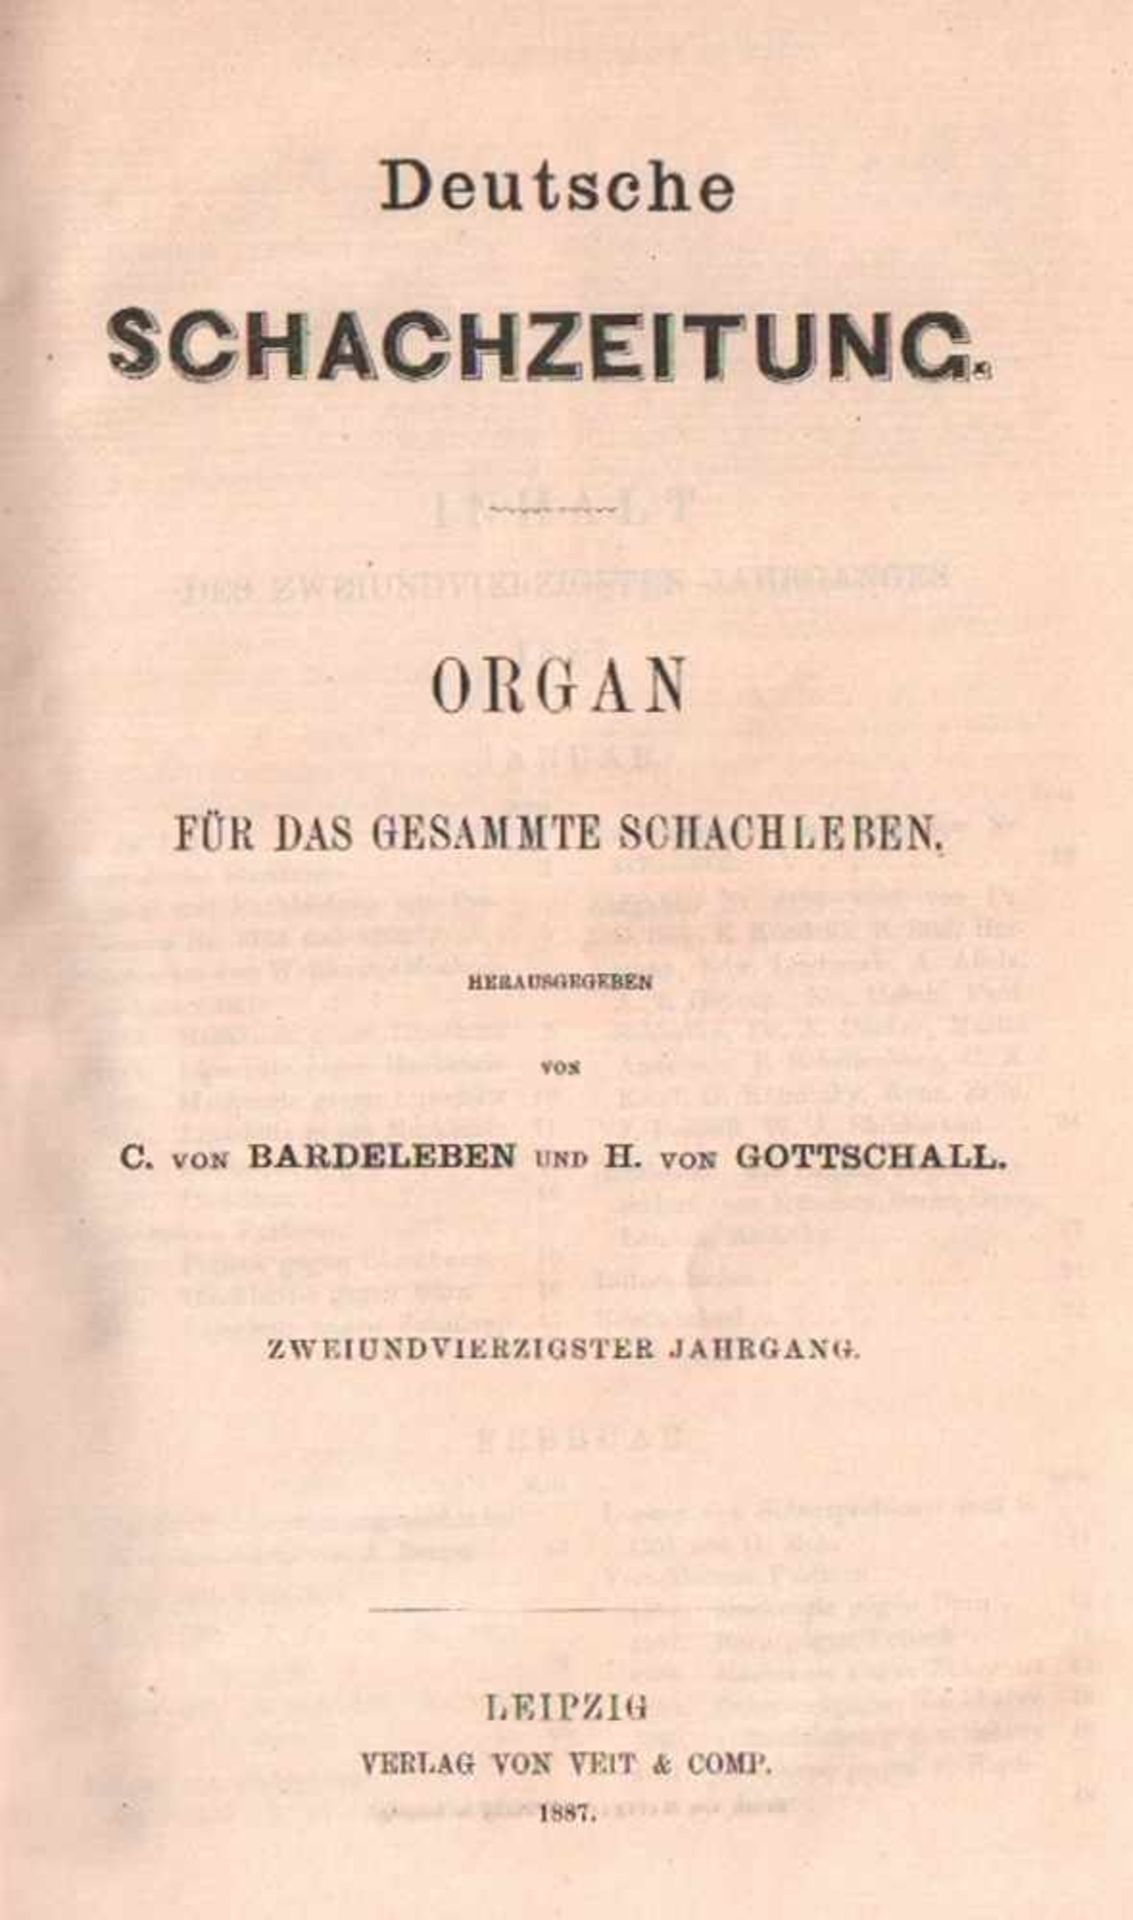 Deutsche Schachzeitung.Organ für das gesammte Schachleben. Hrsg. von C. von Bardeleben und H. von